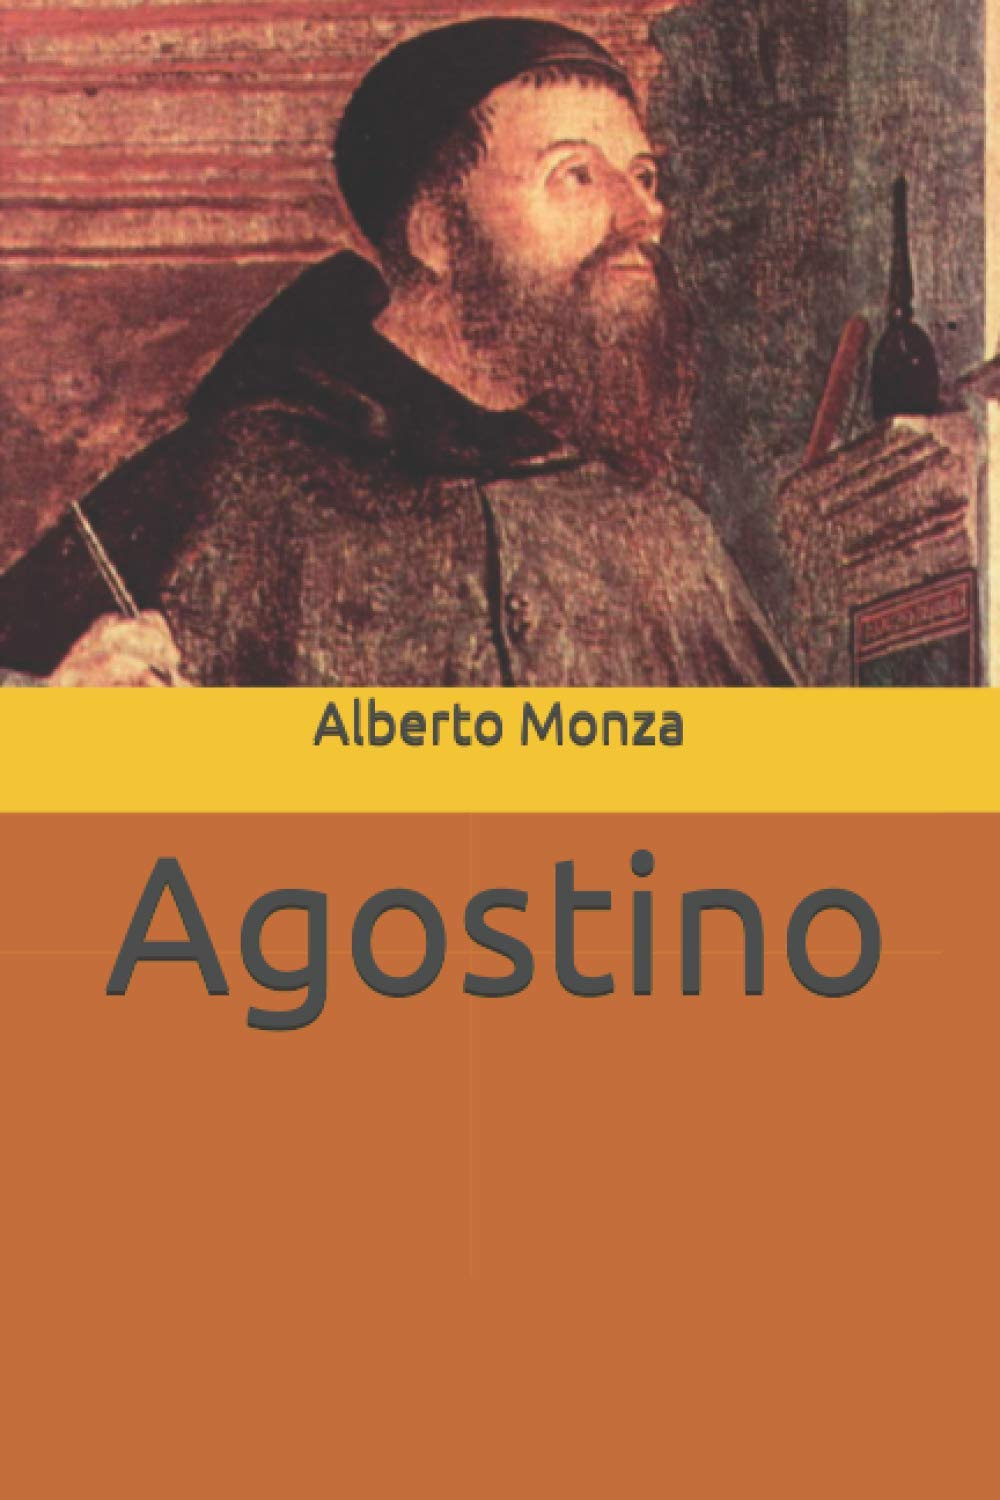 Agostino)